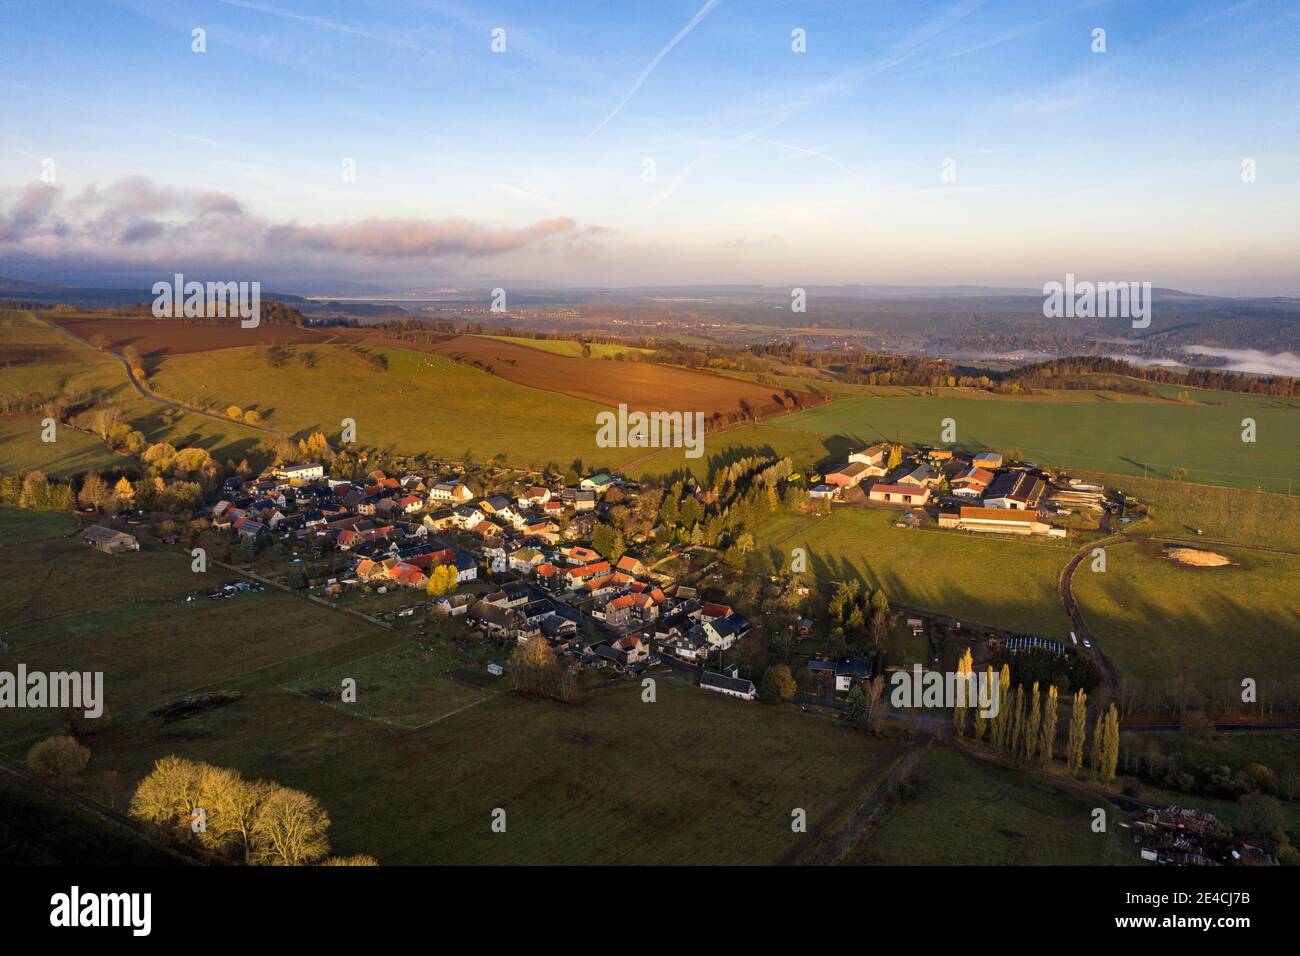 Germania, Turingia, Königsee, Unterhain, villaggio, azienda agricola (ex GPL), campi, luce del mattino, panoramica, vista aerea Foto Stock